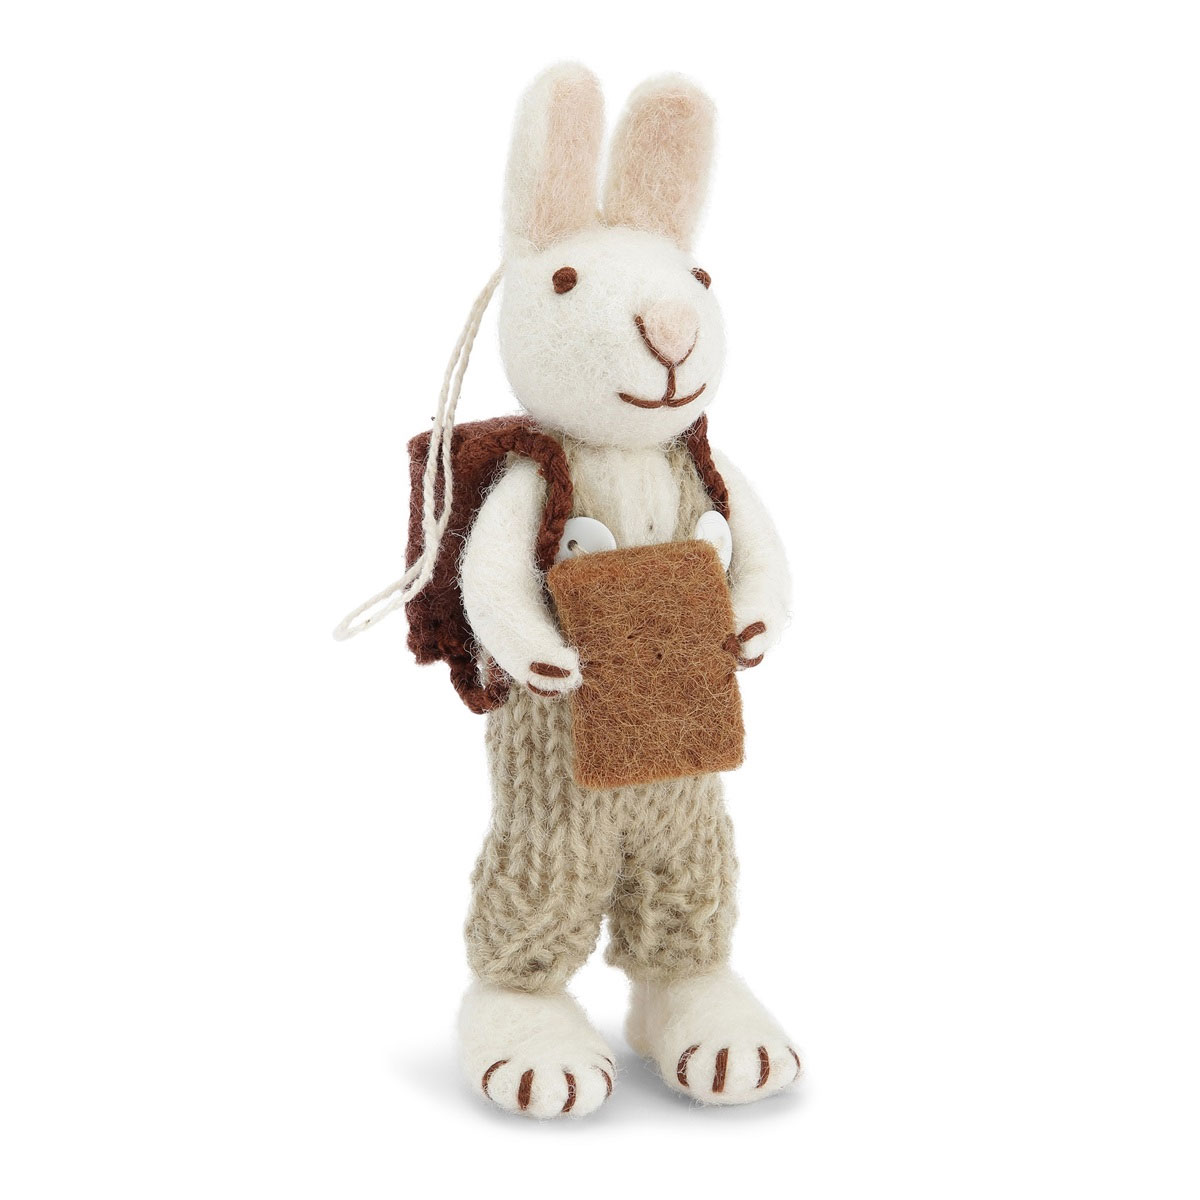 Gry & Sif Hase weiß mit Hose und Buch, aus Filz,  ca. 13 cm  